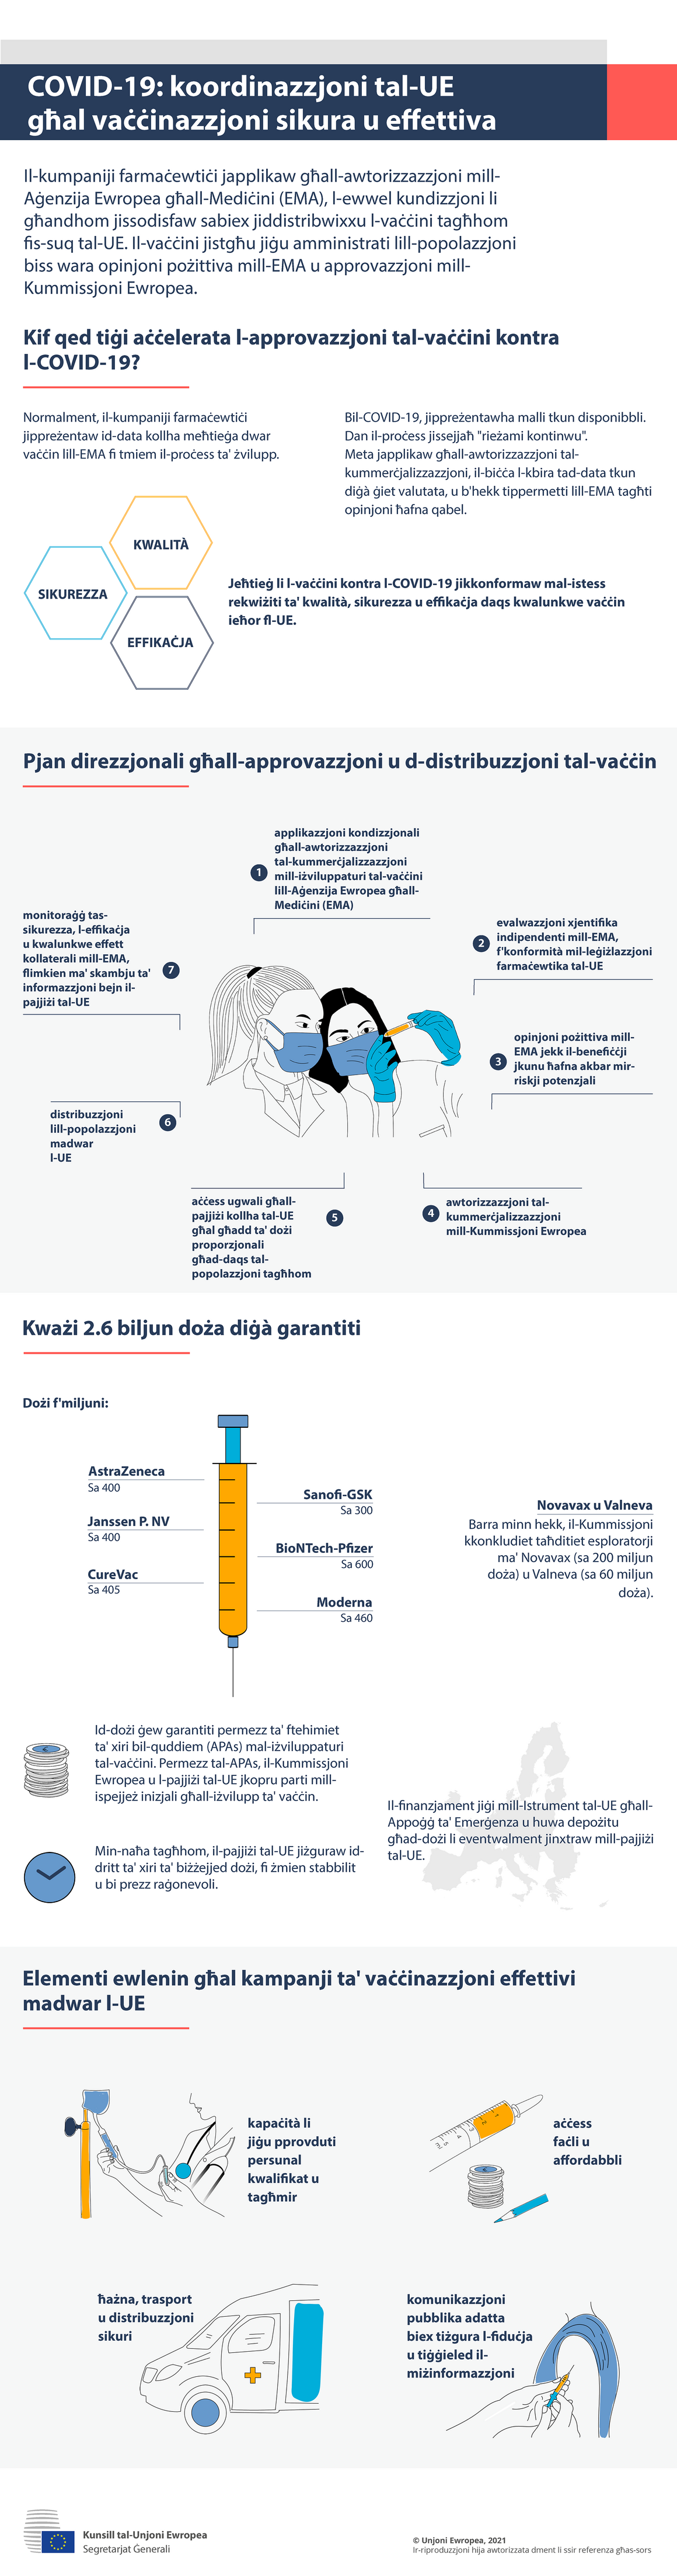 Infografika - COVID-19: Koordinazzjoni tal-UE għal vaċċinazzjoni sikura u effettiva